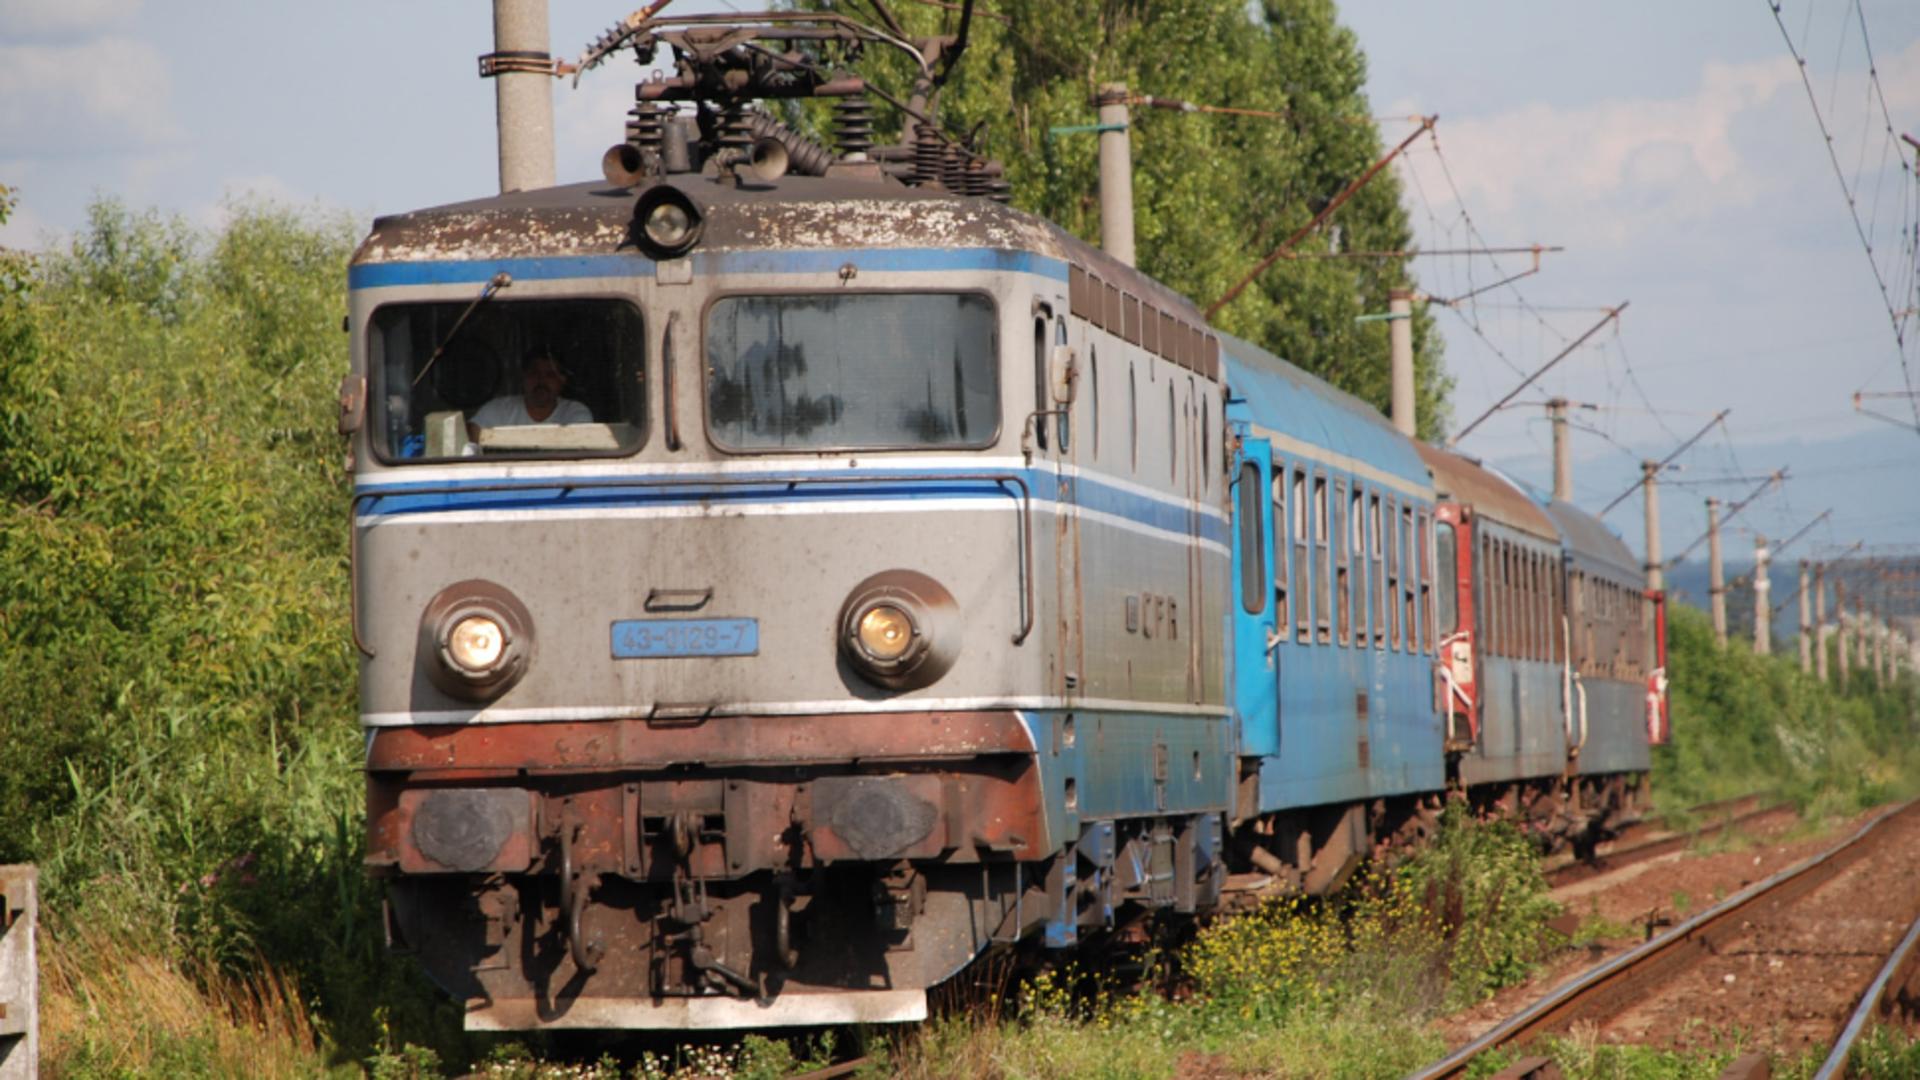 Trenul cu copii plecat din Mangalia de miercuri a ajuns la 13 ore de întârziere - CÂND ar trebui să ajungă în Timișoara